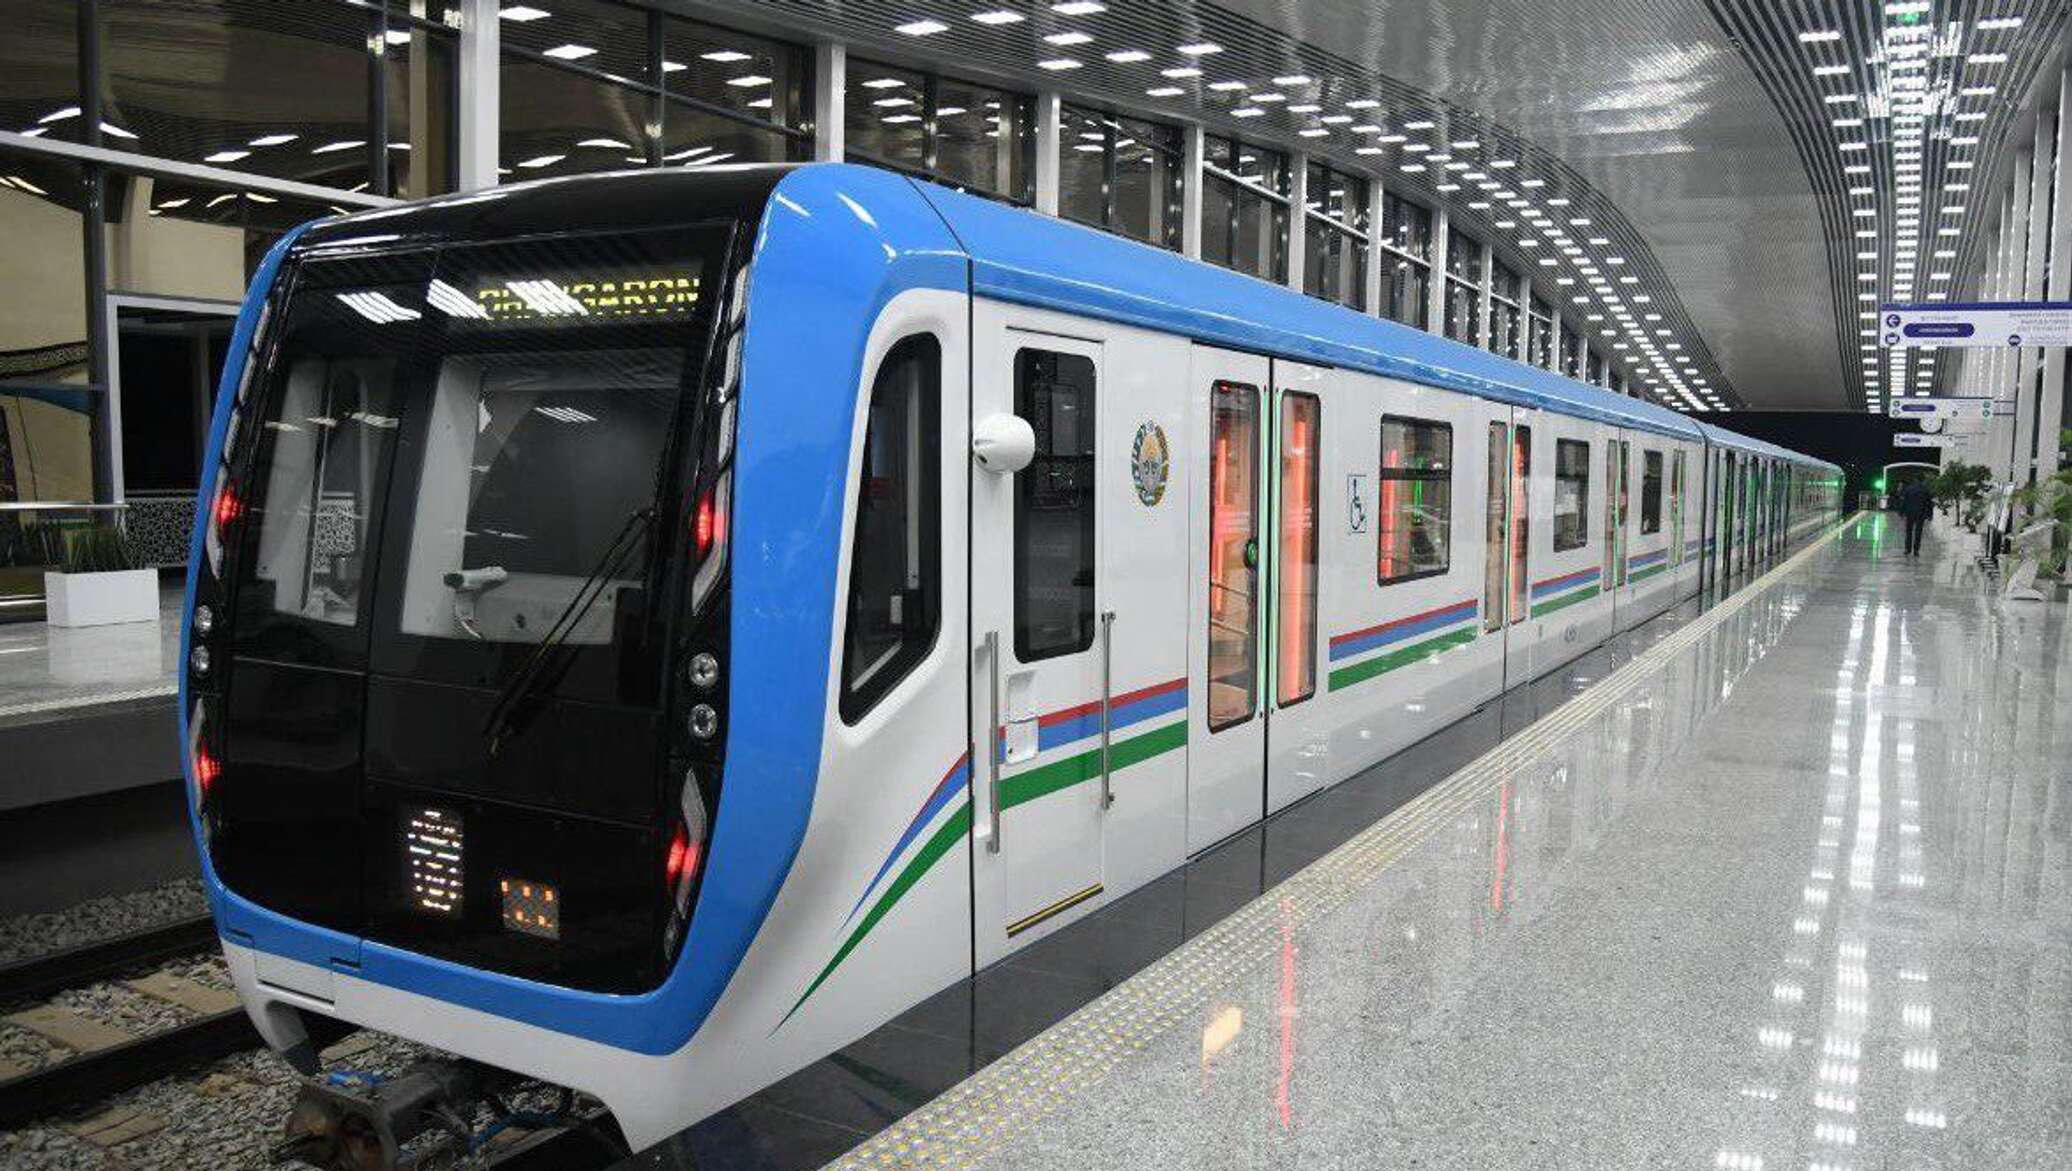 новые станции метро в ташкенте